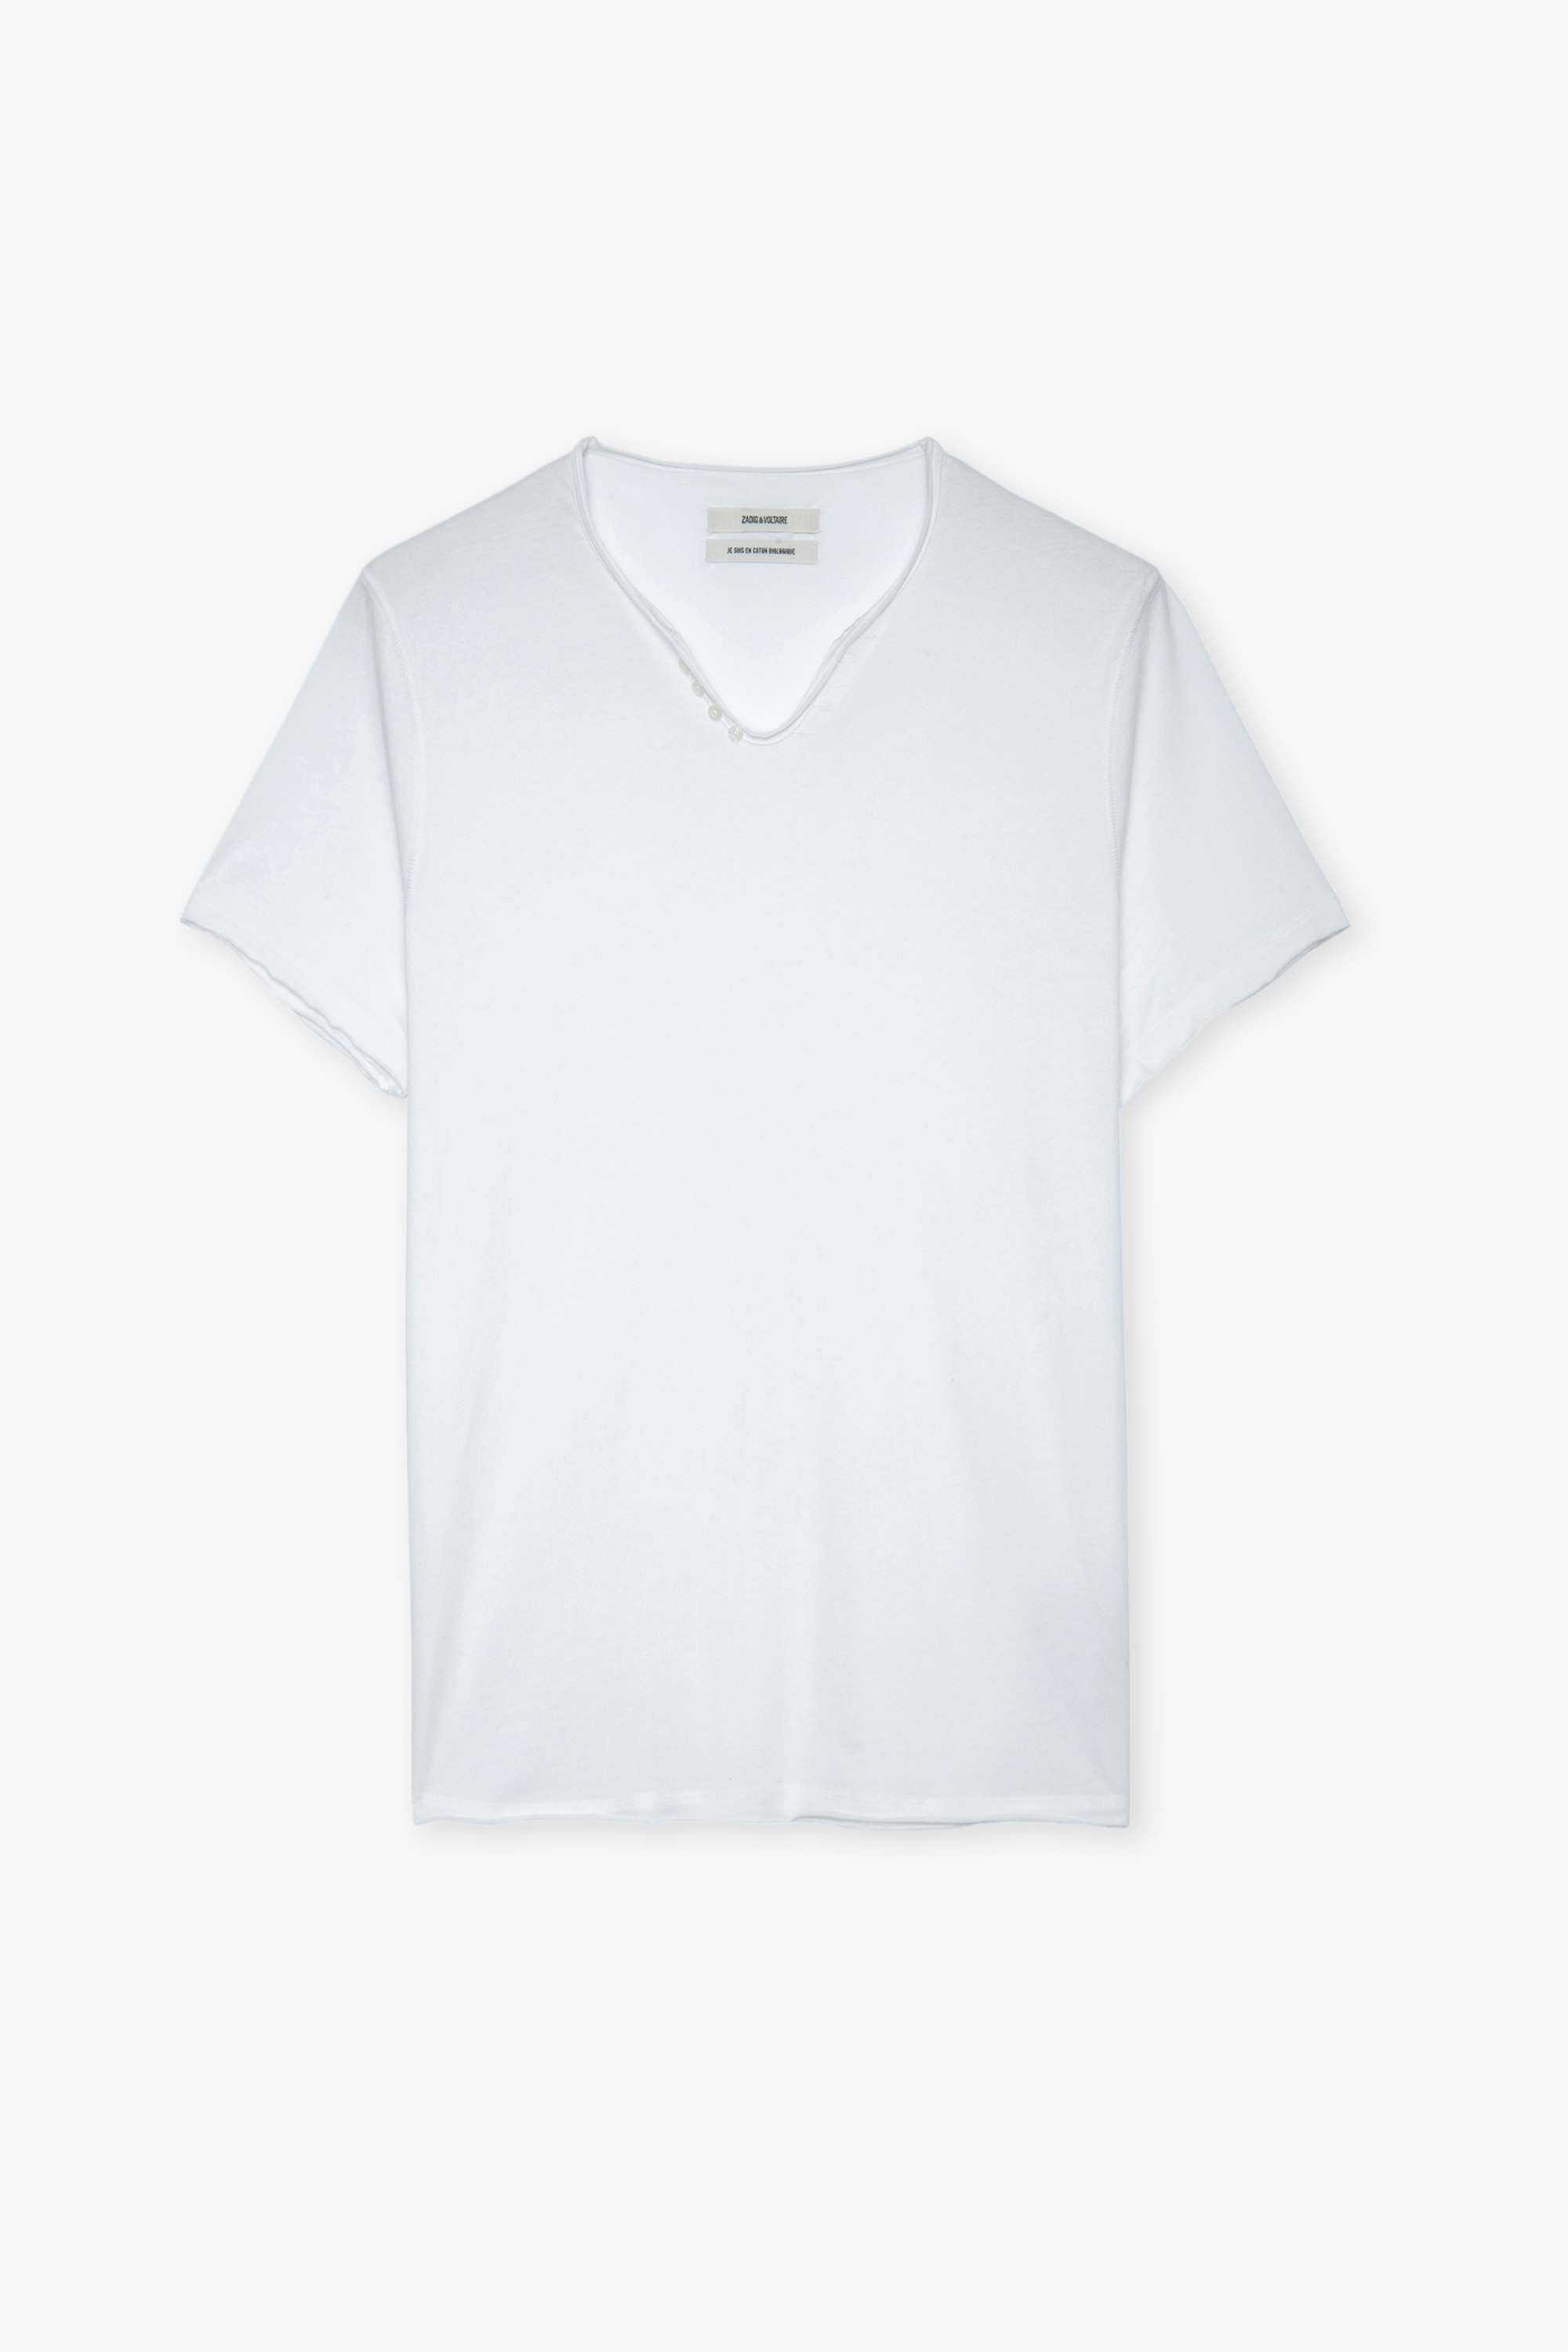 Monastir Ｔシャツ - Men’s white T-shirt